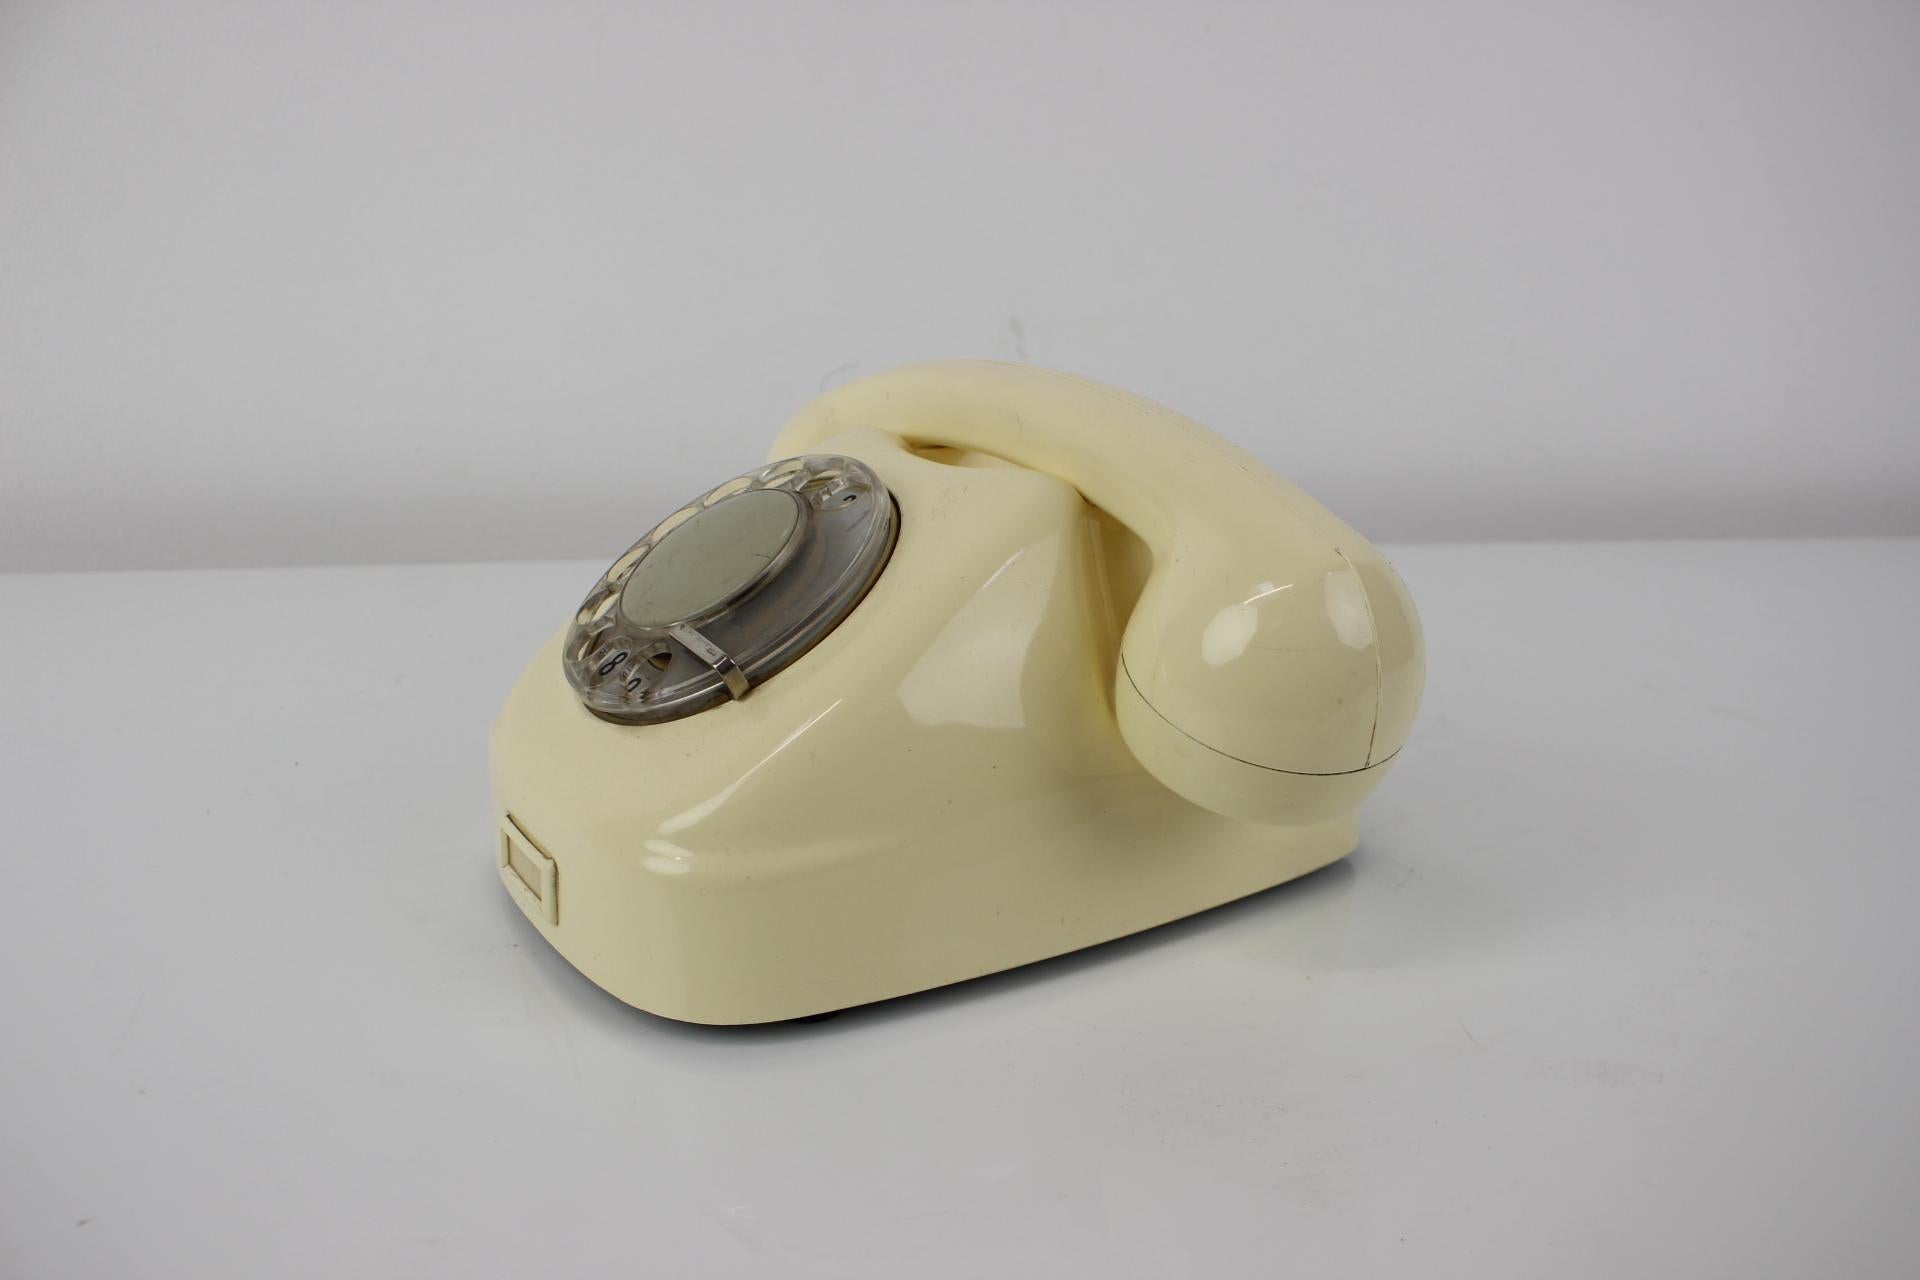 phones in 1968